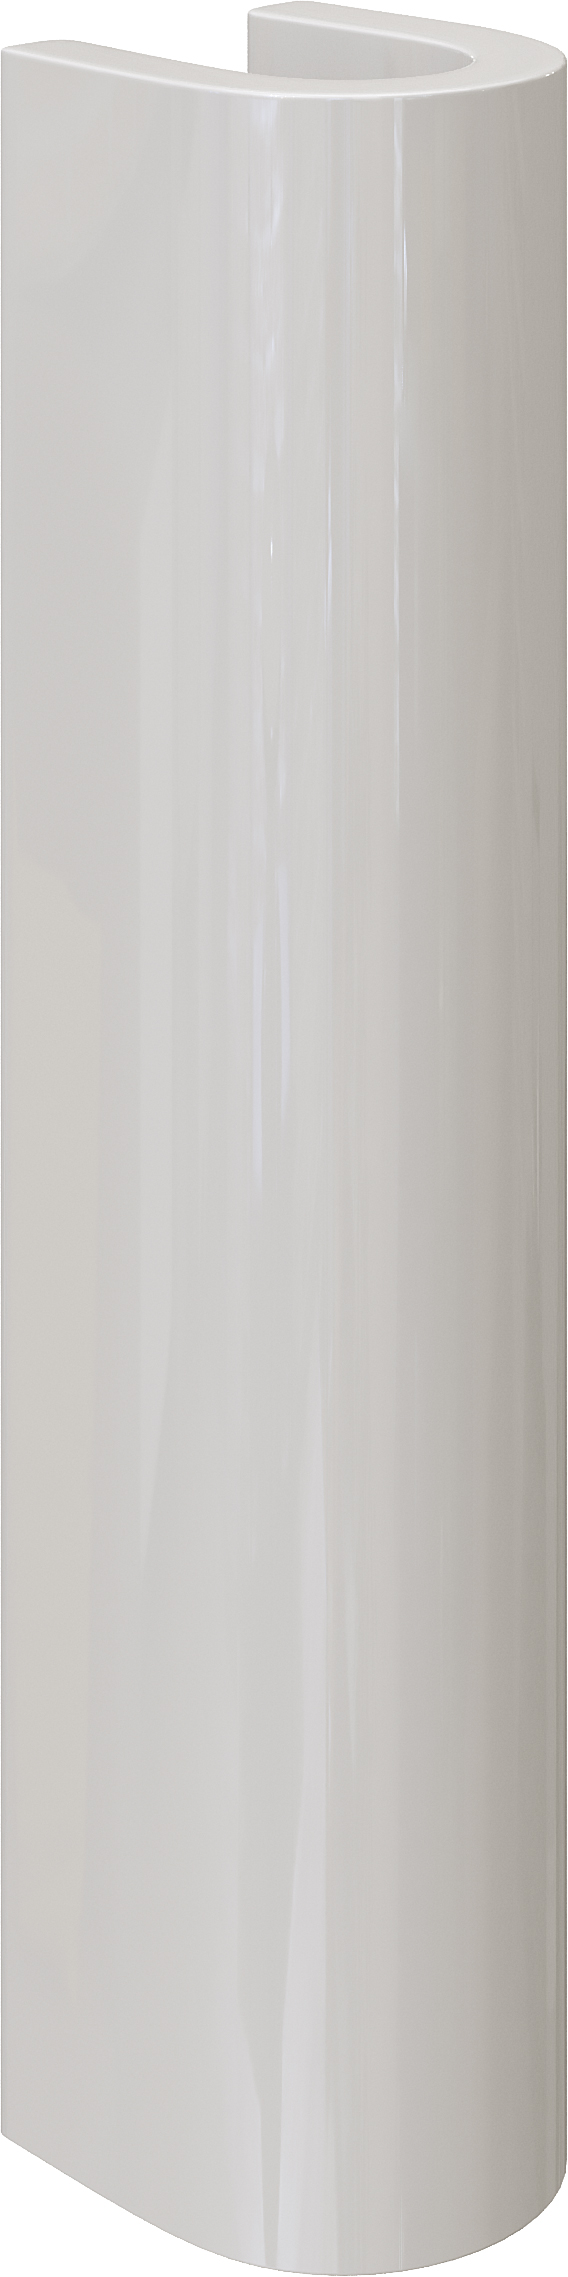 Комплект  Раковина DIWO Коломна 0110 + Зеркало DIWO Псков 40 с полкой + Сифон для раковины Wirquin Минор с отводом для стиральной машины + Пьедестал д 550481 - 6